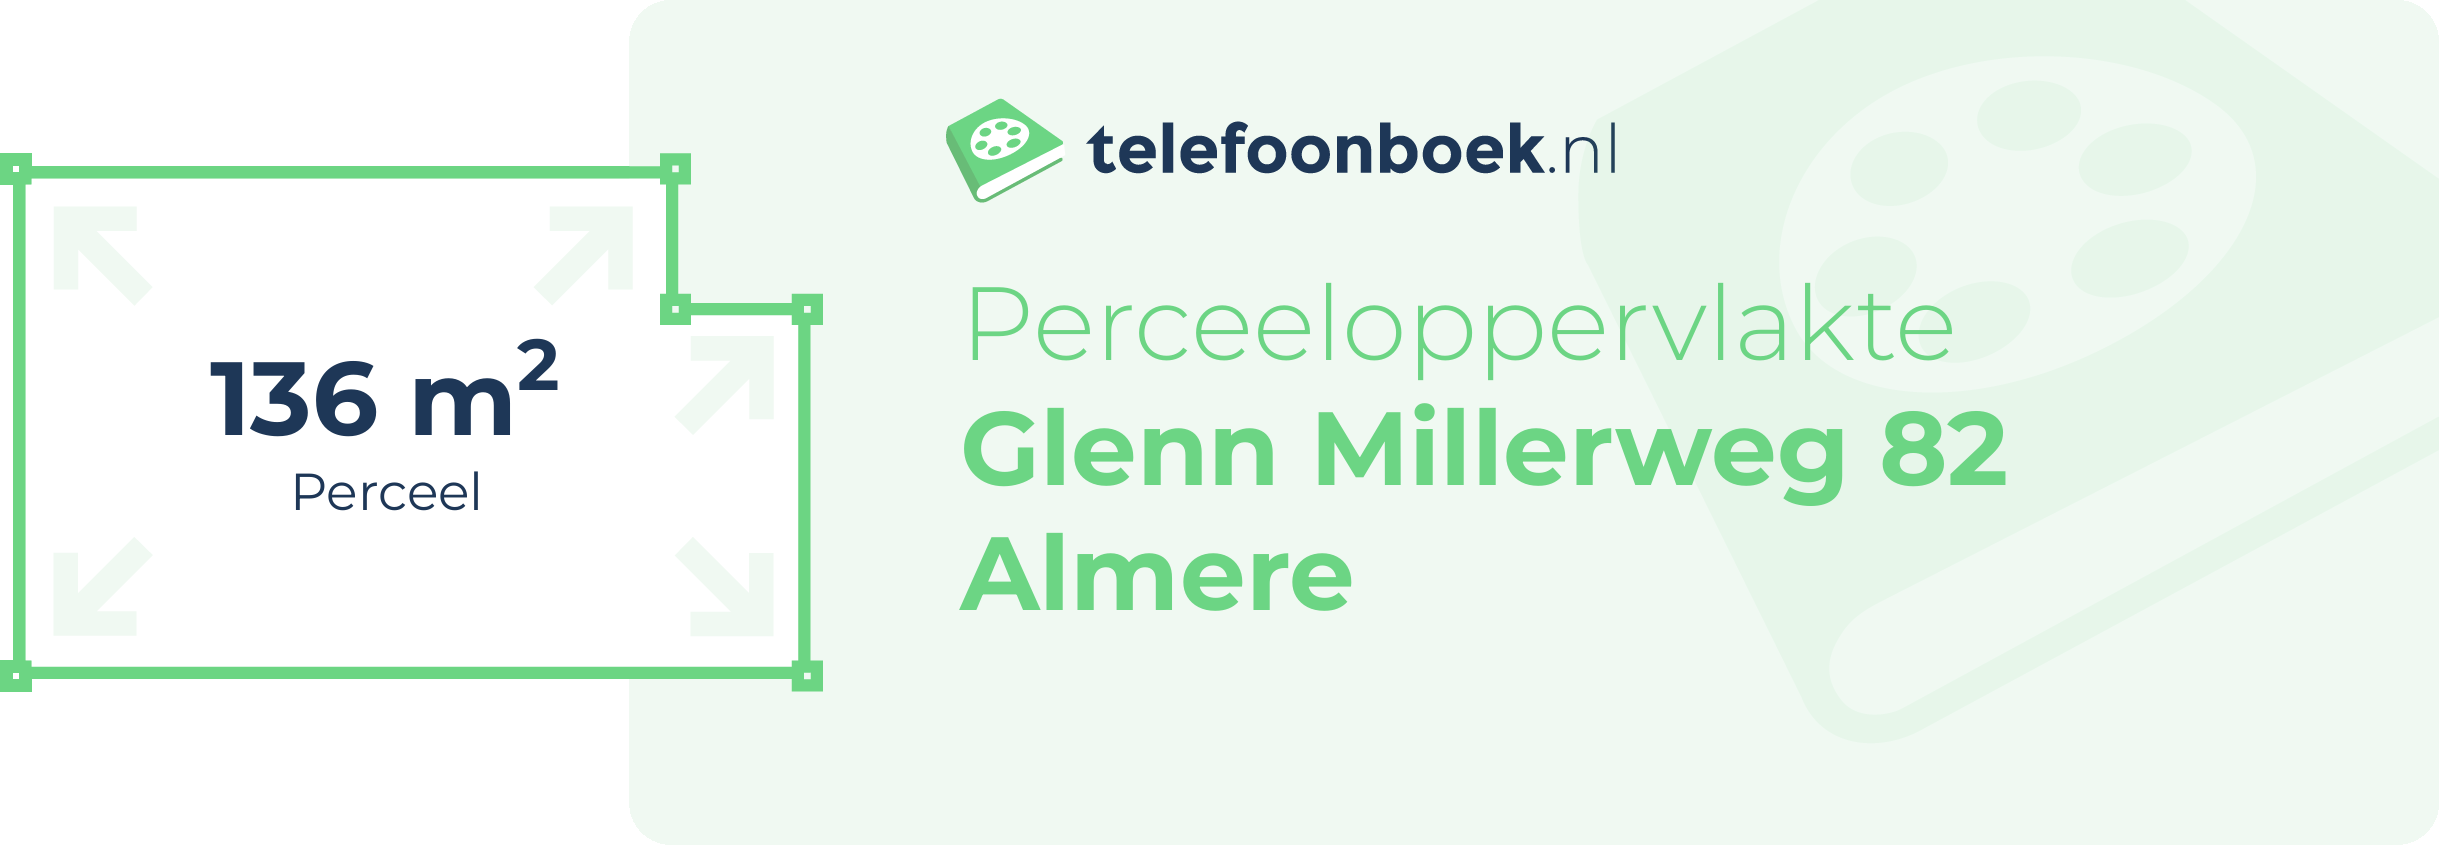 Perceeloppervlakte Glenn Millerweg 82 Almere